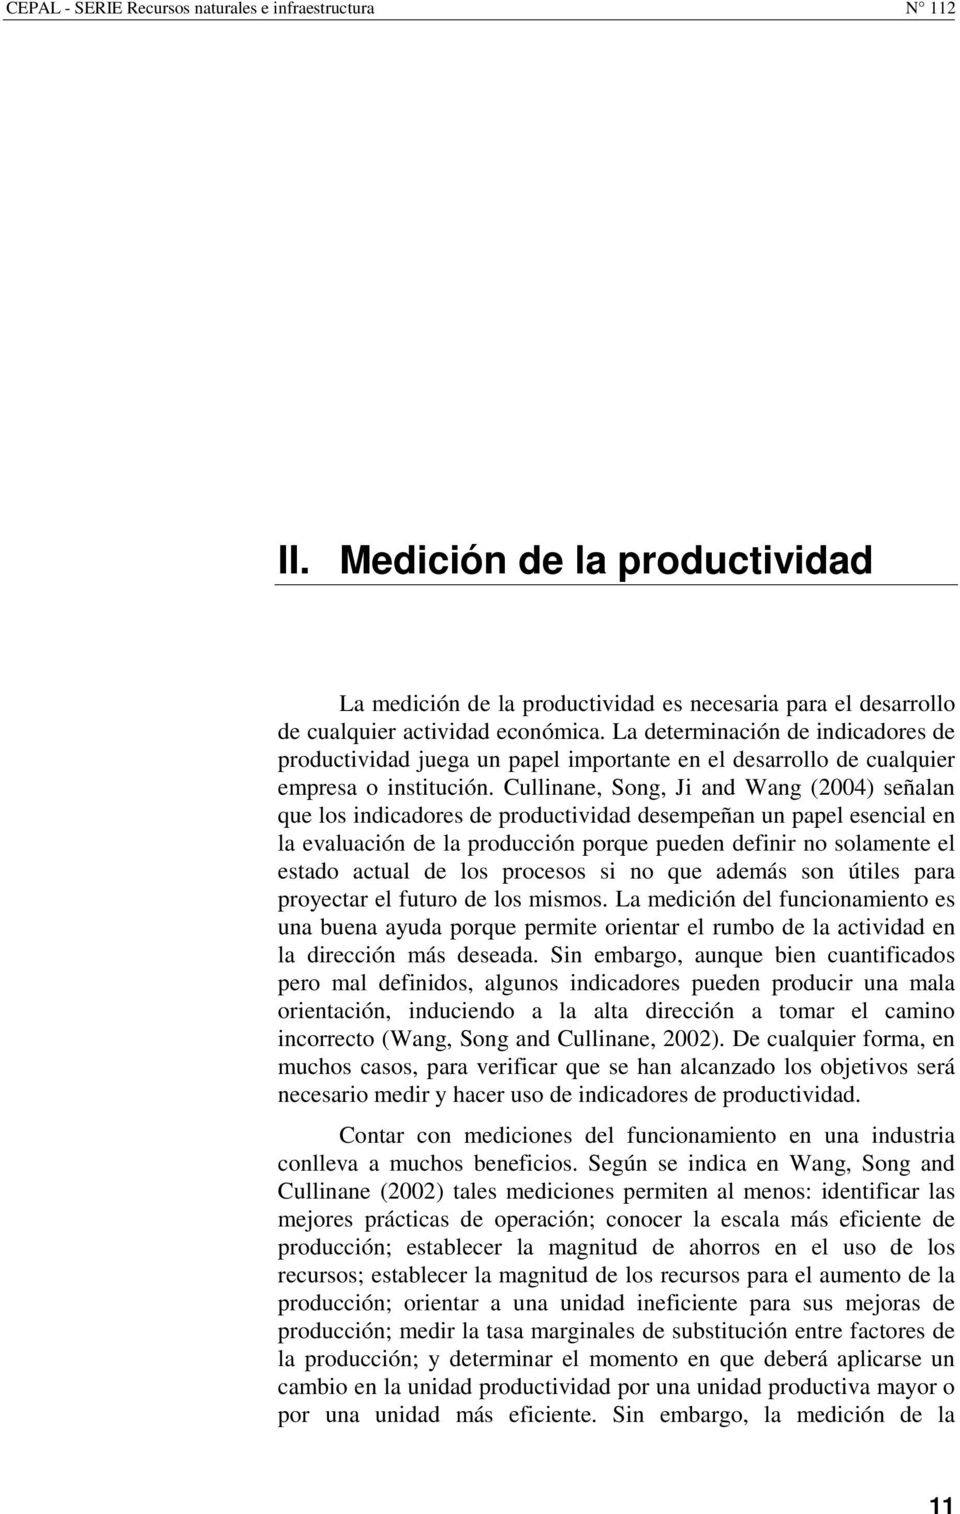 Cullinane, Song, Ji and Wang (2004) señalan que los indicadores de productividad desempeñan un papel esencial en la evaluación de la producción porque pueden definir no solamente el estado actual de